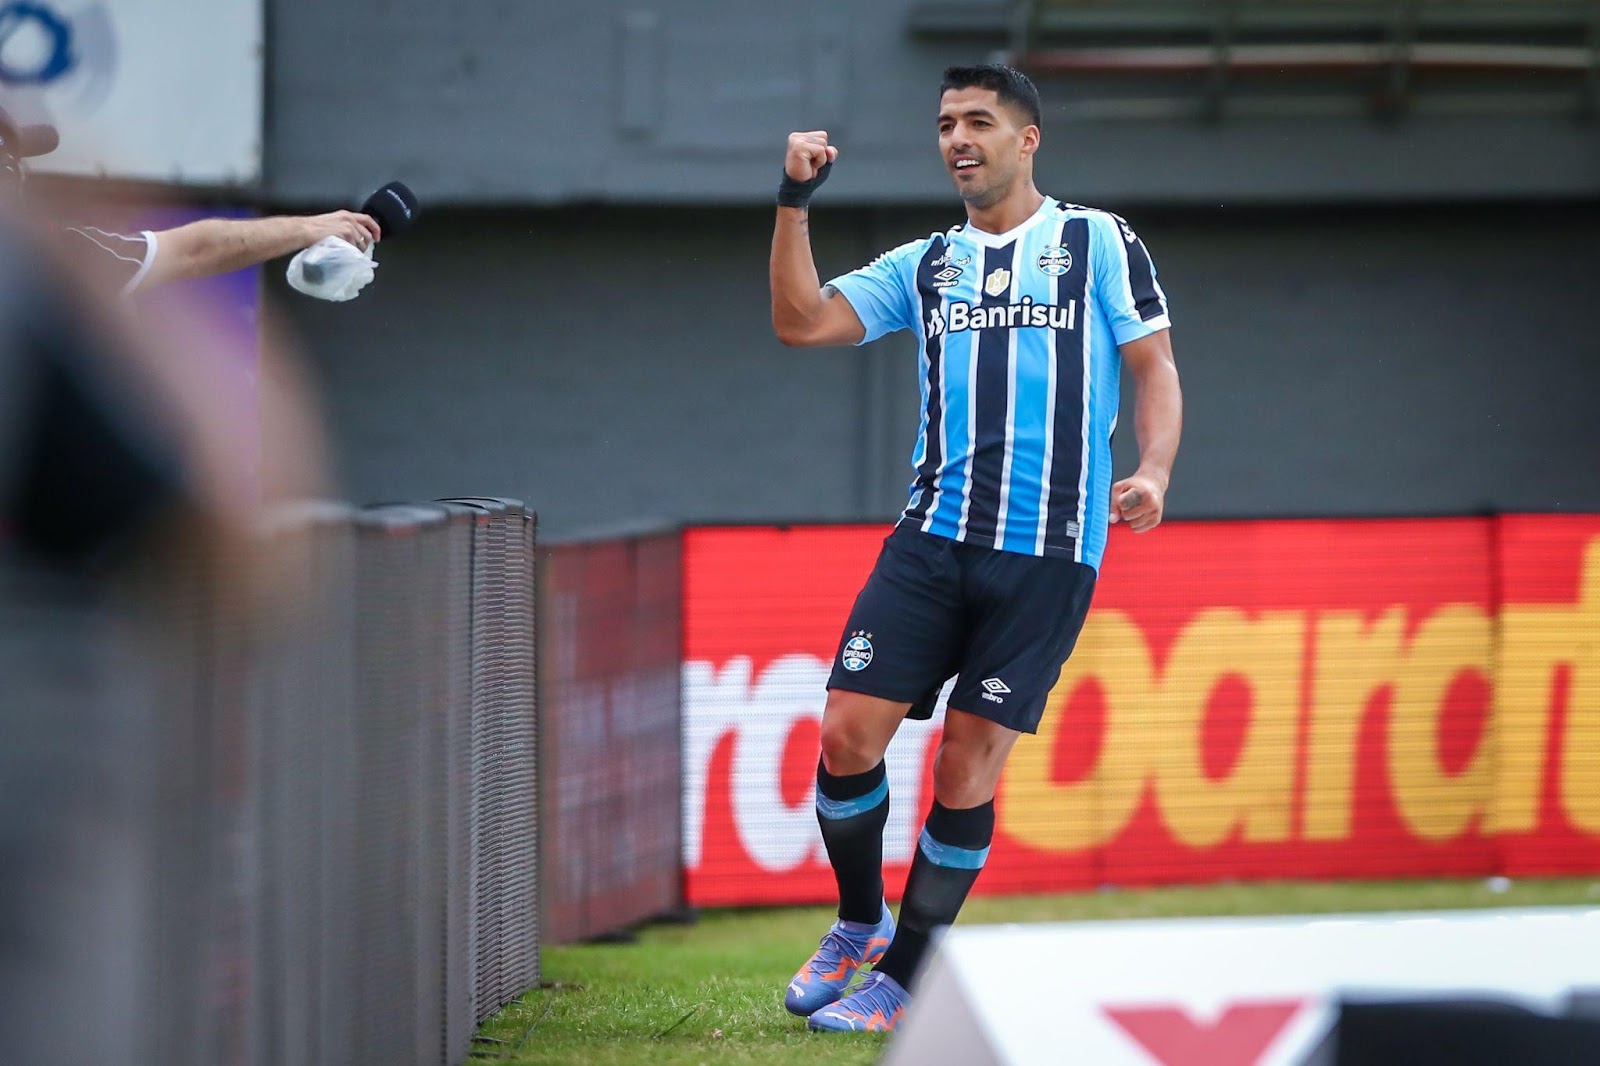 Suárez é a sensação do momento no futebol brasileiro - Foto: Lucas Uebel/Grêmio